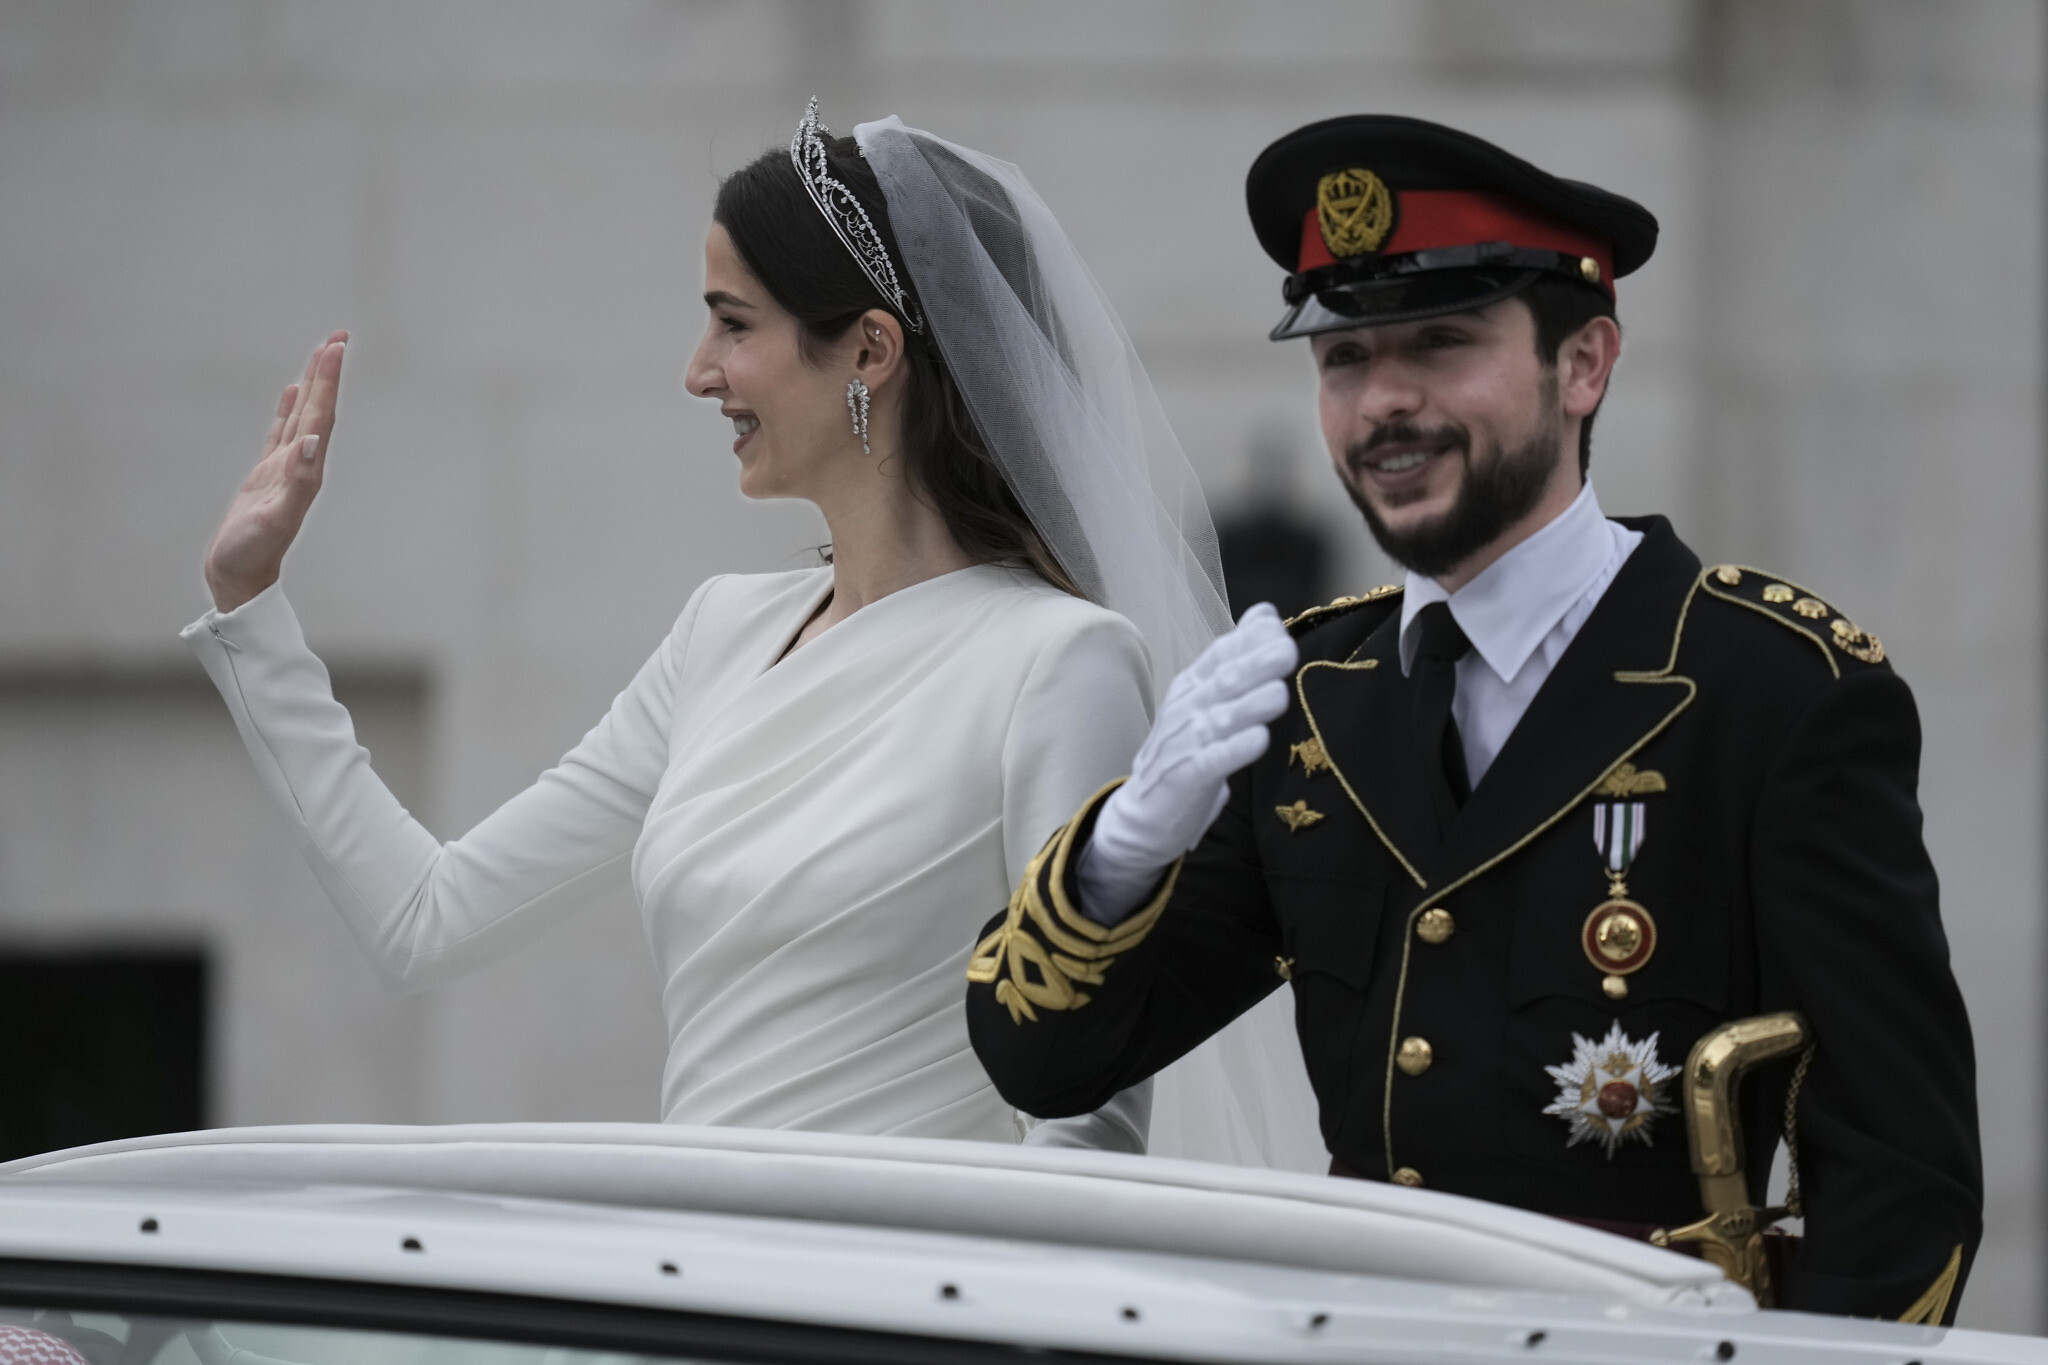 Lebanese designer Elie Saab made bridal gown for Jordanian royal